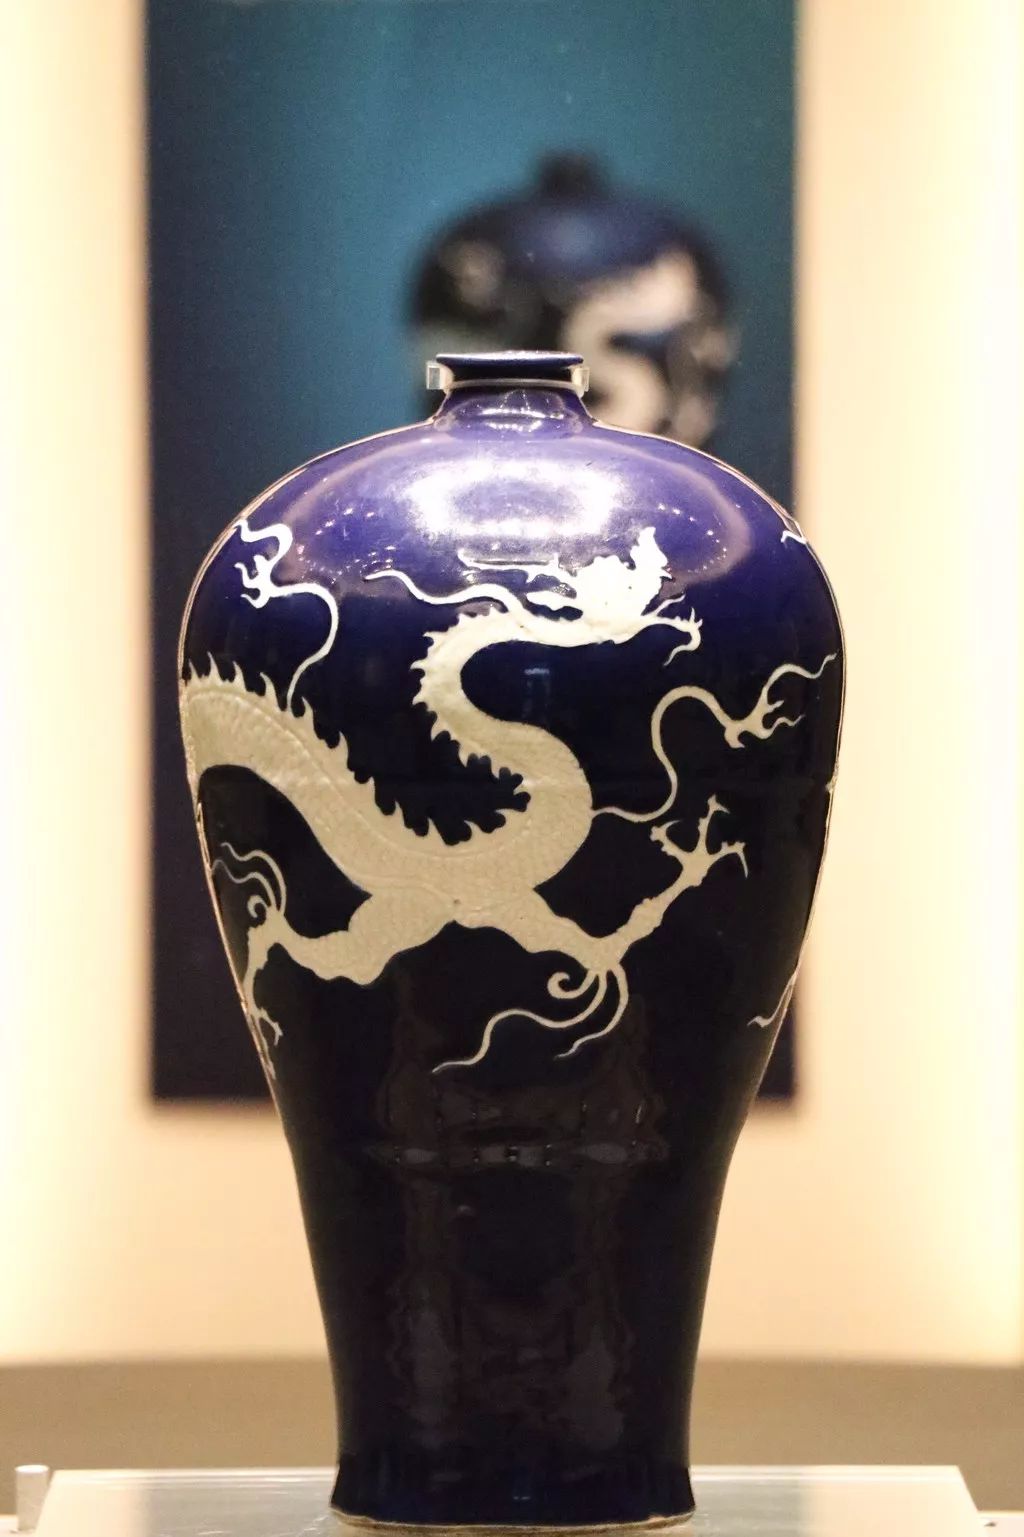 铭和南博的王志敏两位古陶瓷专家共同鉴定,认定为是元代蓝釉瓷器精品